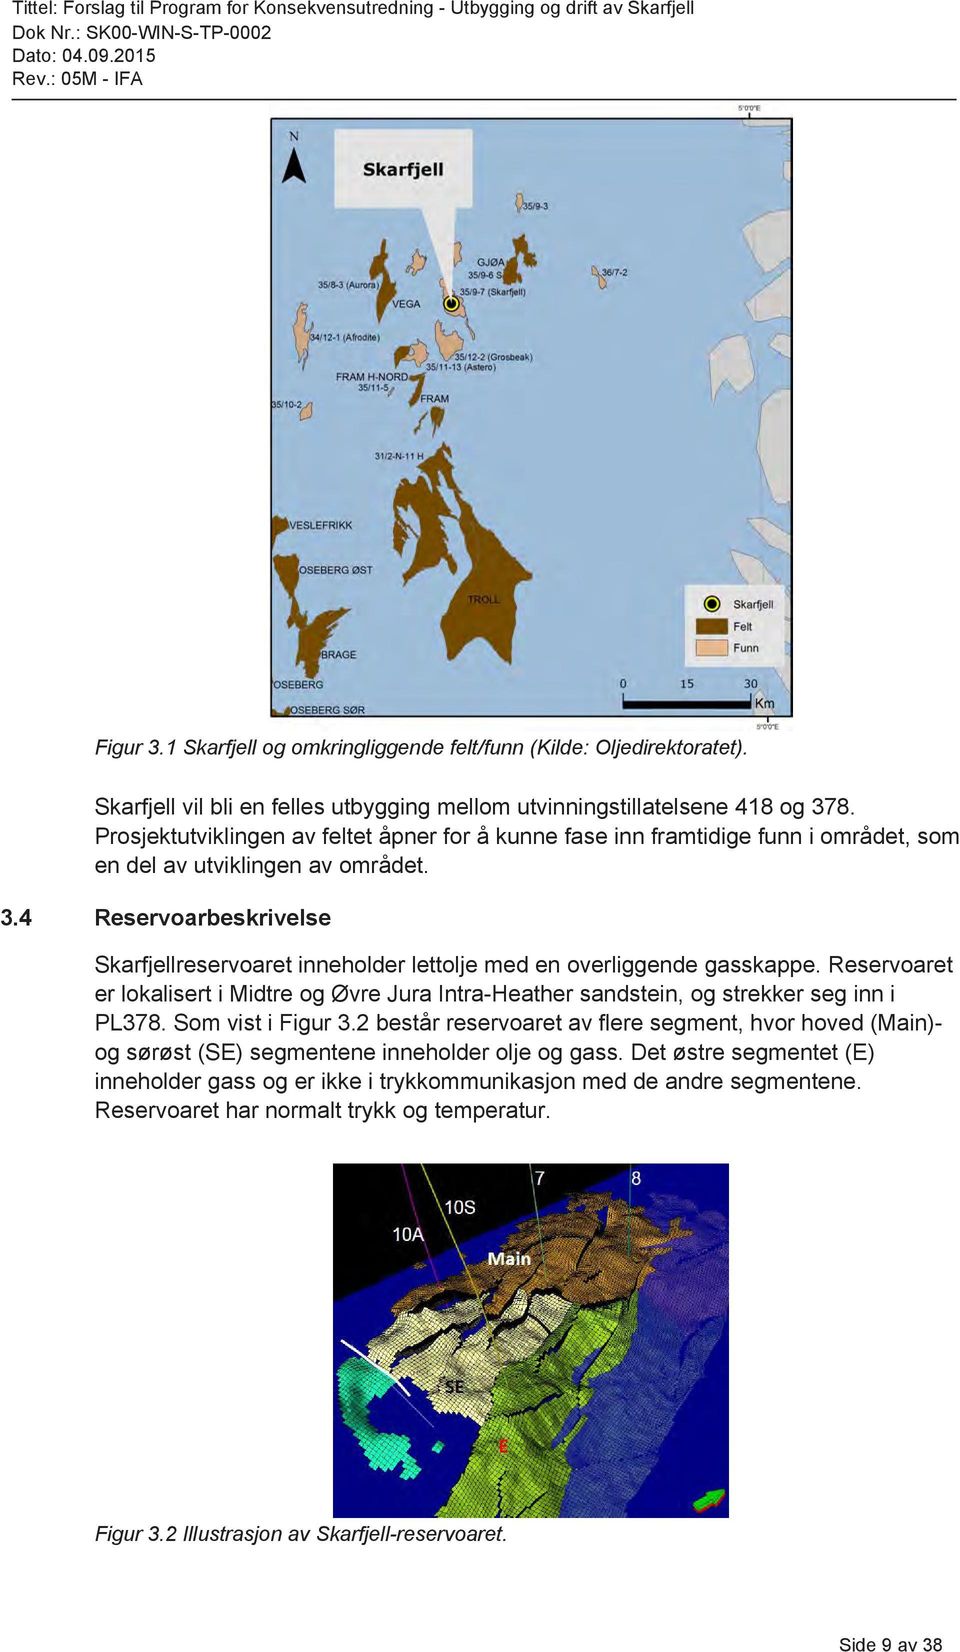 4 Reservoarbeskrivelse Skarfjellreservoaret inneholder lettolje med en overliggende gasskappe. Reservoaret er lokalisert i Midtre og Øvre Jura Intra-Heather sandstein, og strekker seg inn i PL378.